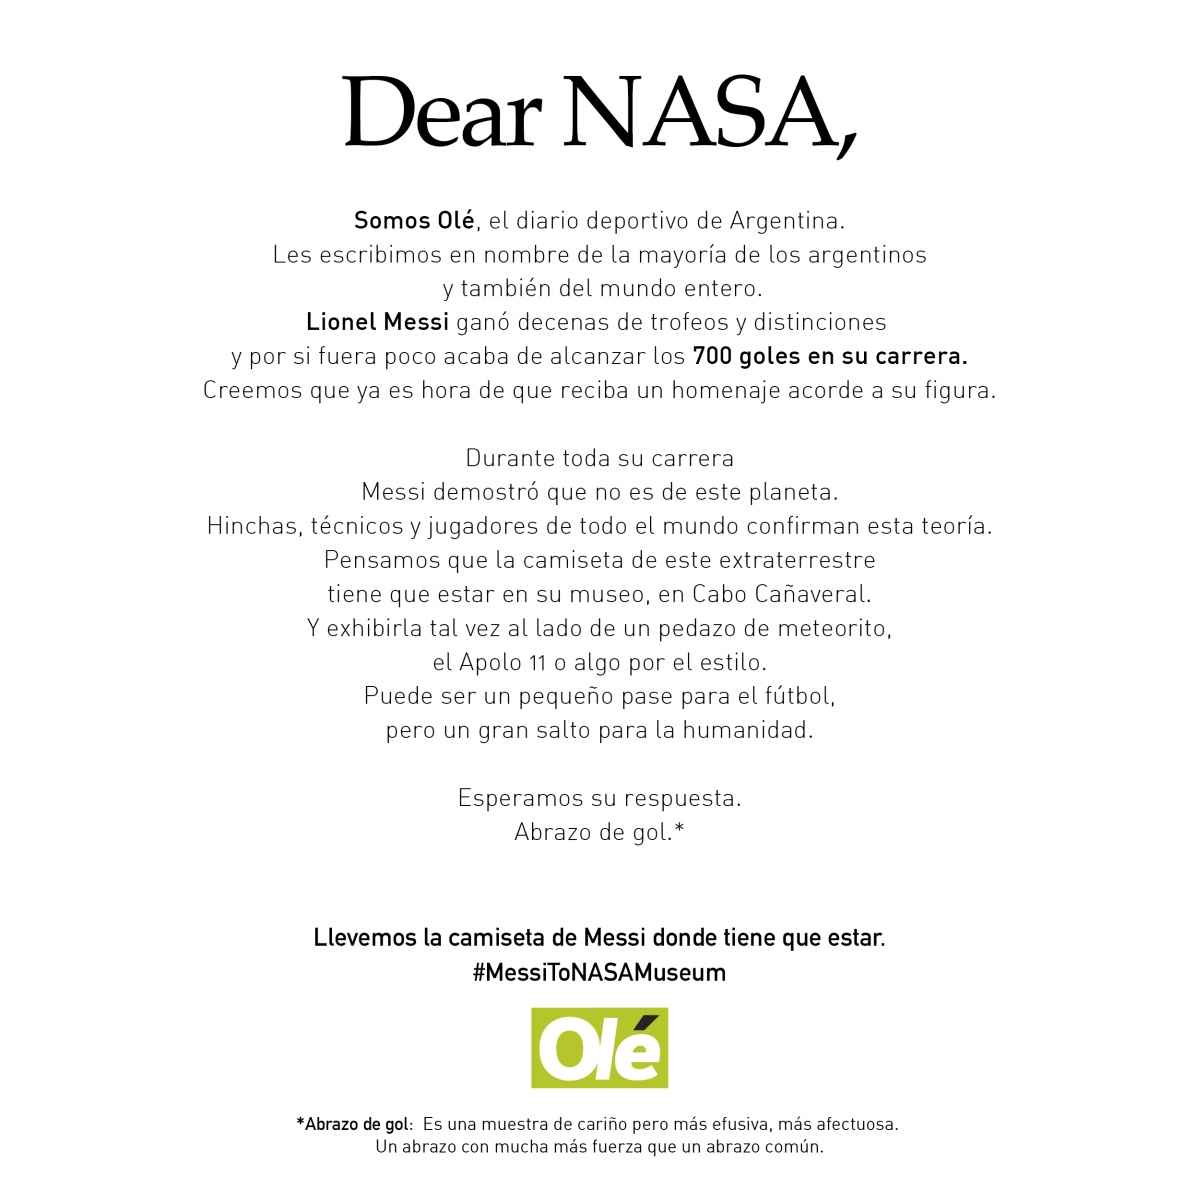 Portada de “Dear NASA”, lo nuevo de VMLY&R para Diario Olé